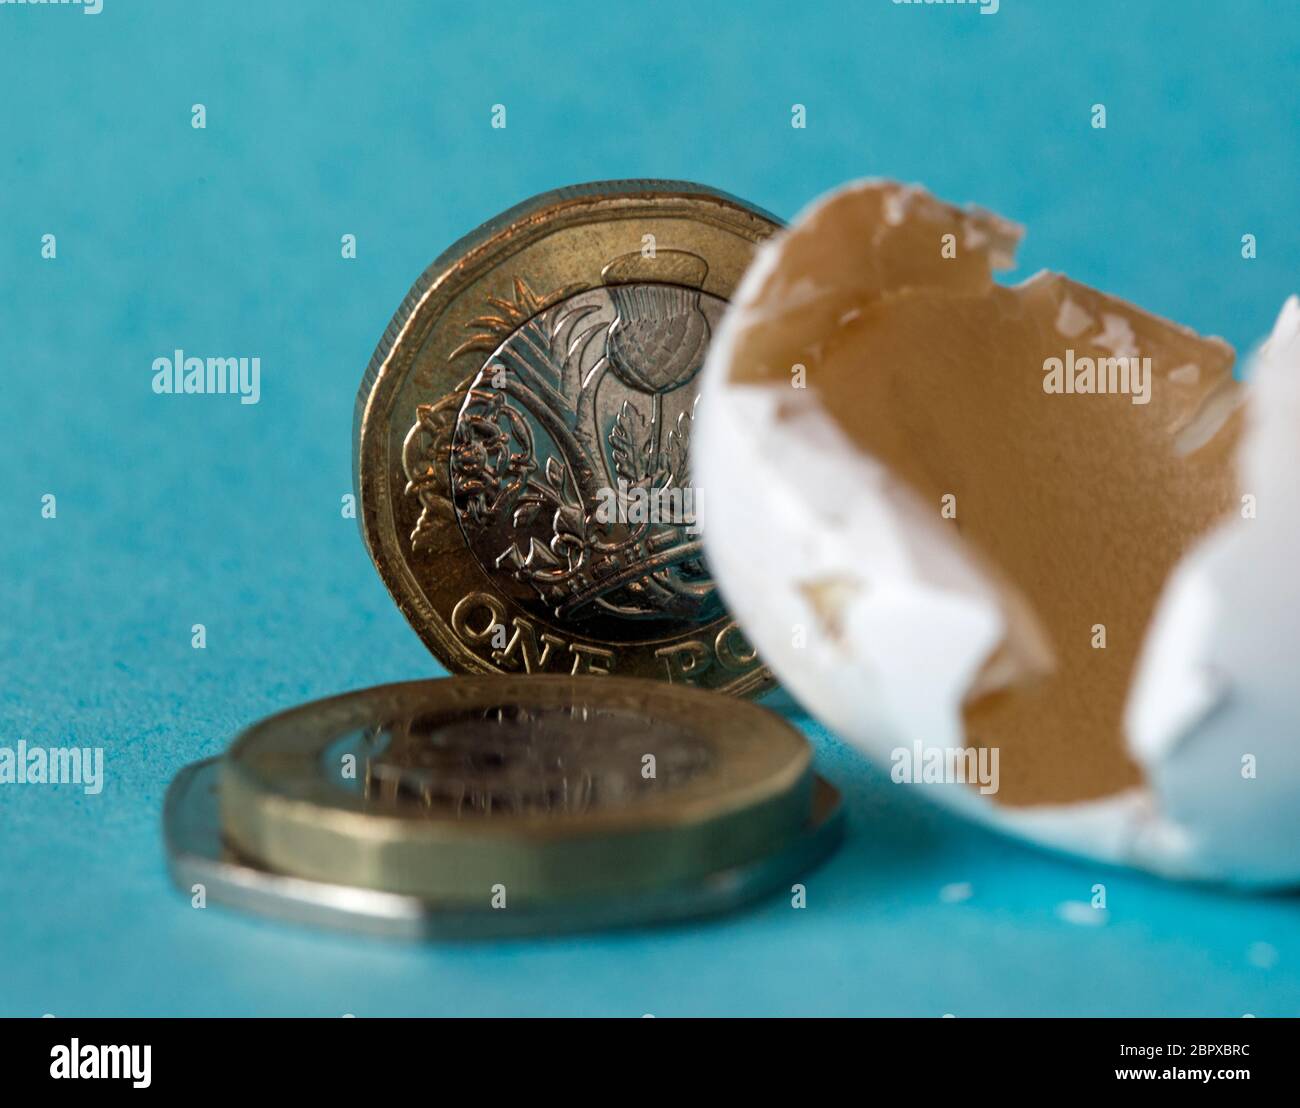 Ethisch bezog Wildvogeleierschale schoss nah oben mit britischen Pfundmünzen, einer zwei-Pfund-Münze und ungefähr 50 Pence Stücke. Stockfoto